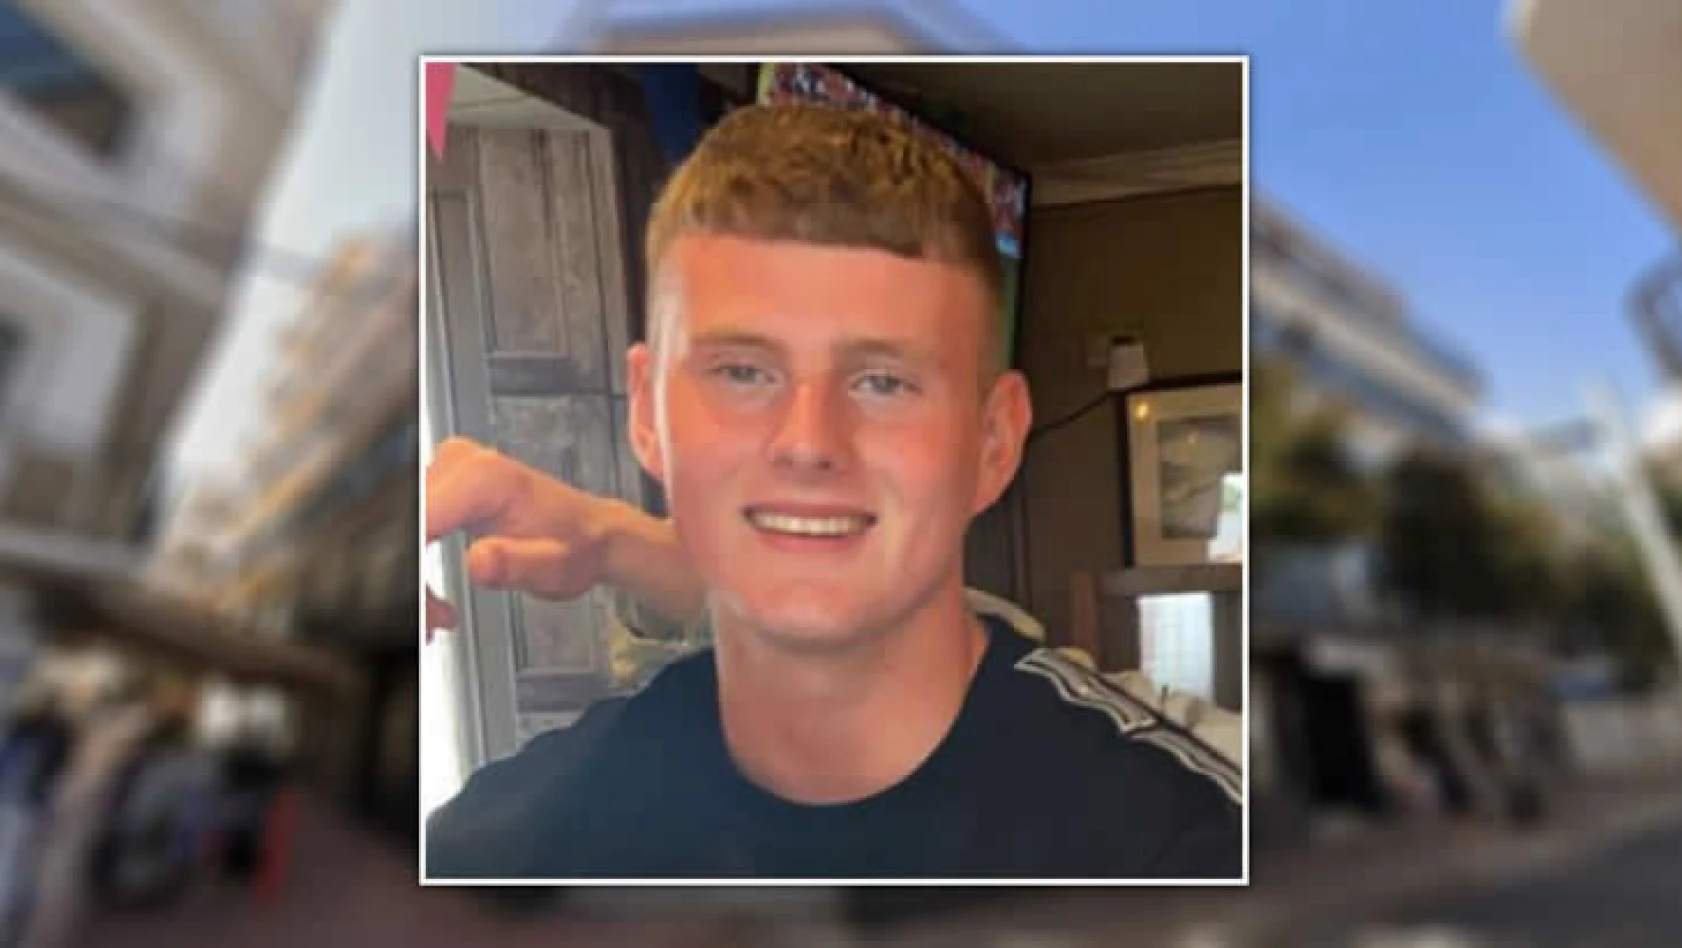 Hayatının baharındaydı! 22 yaşındaki futbolcu John McKenna, tatilde balkondan düşerek hayatını kaybetti!